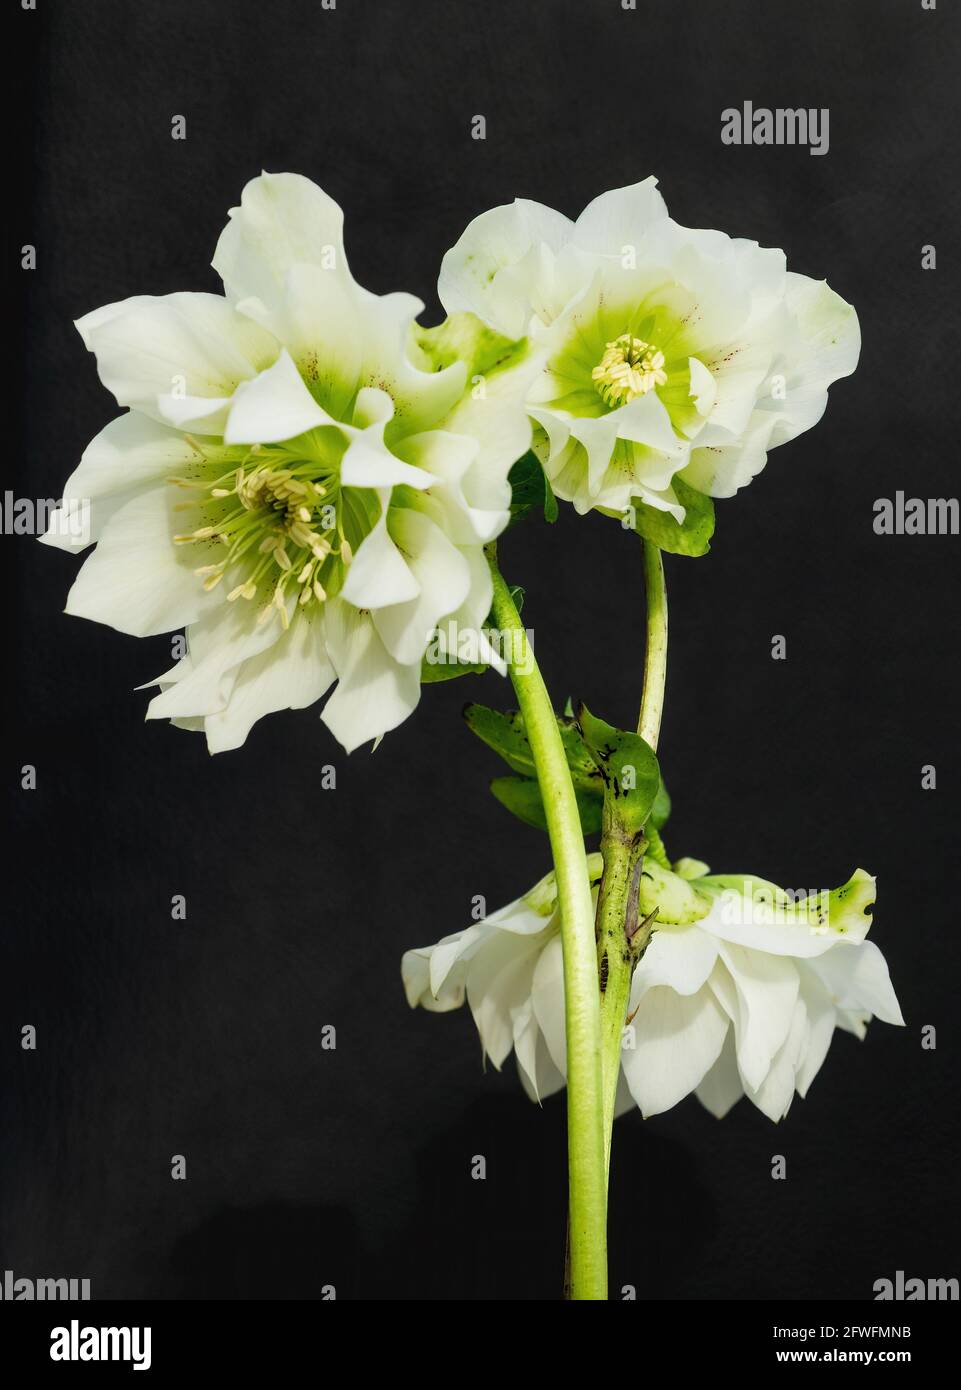 Una impresionante Helleboro orientalis 'Reina doble' de color blanco puro. También conocido como Lenten Rose o Christmas Rose. Foto de stock